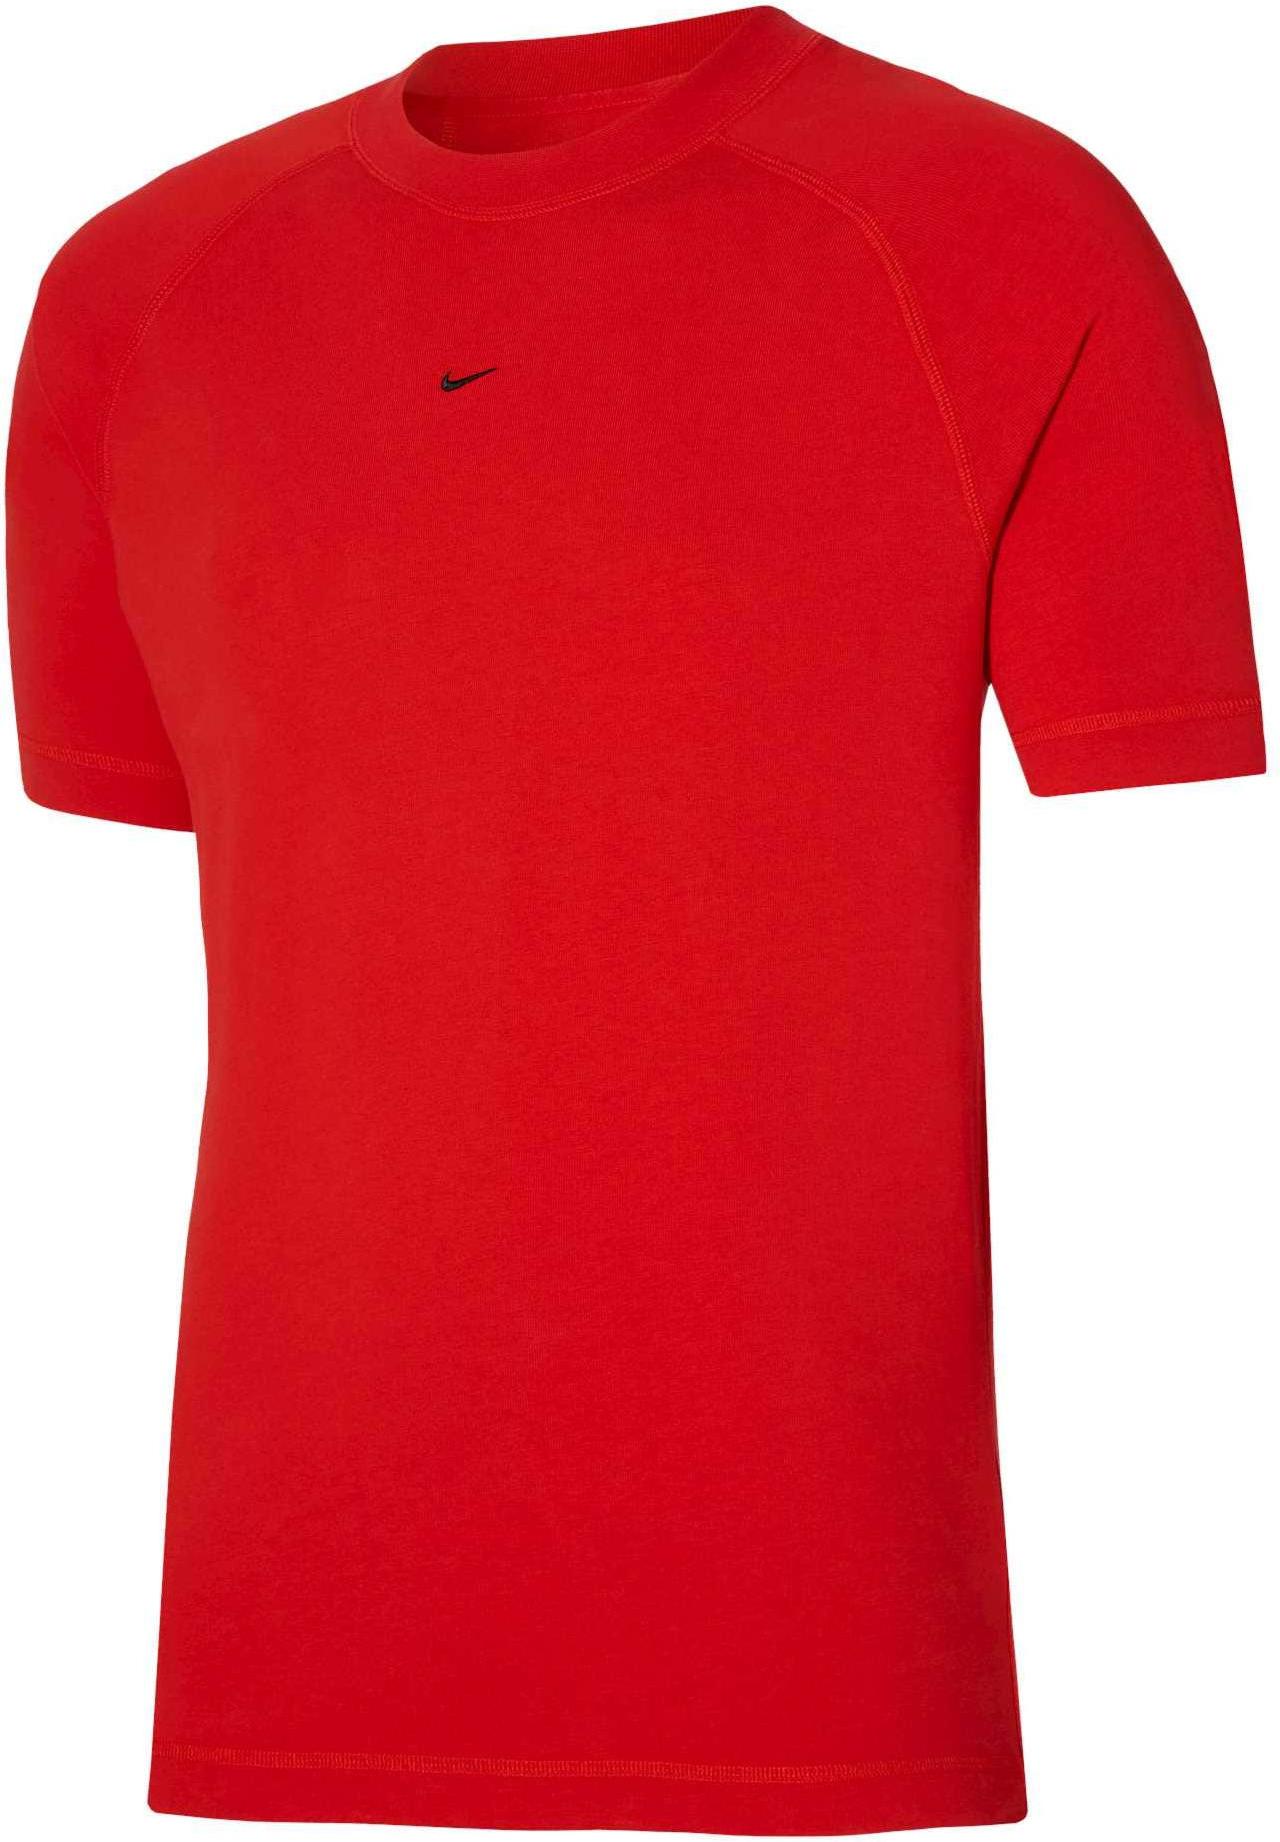 Camiseta Nike Strike 22 Express Top S/S